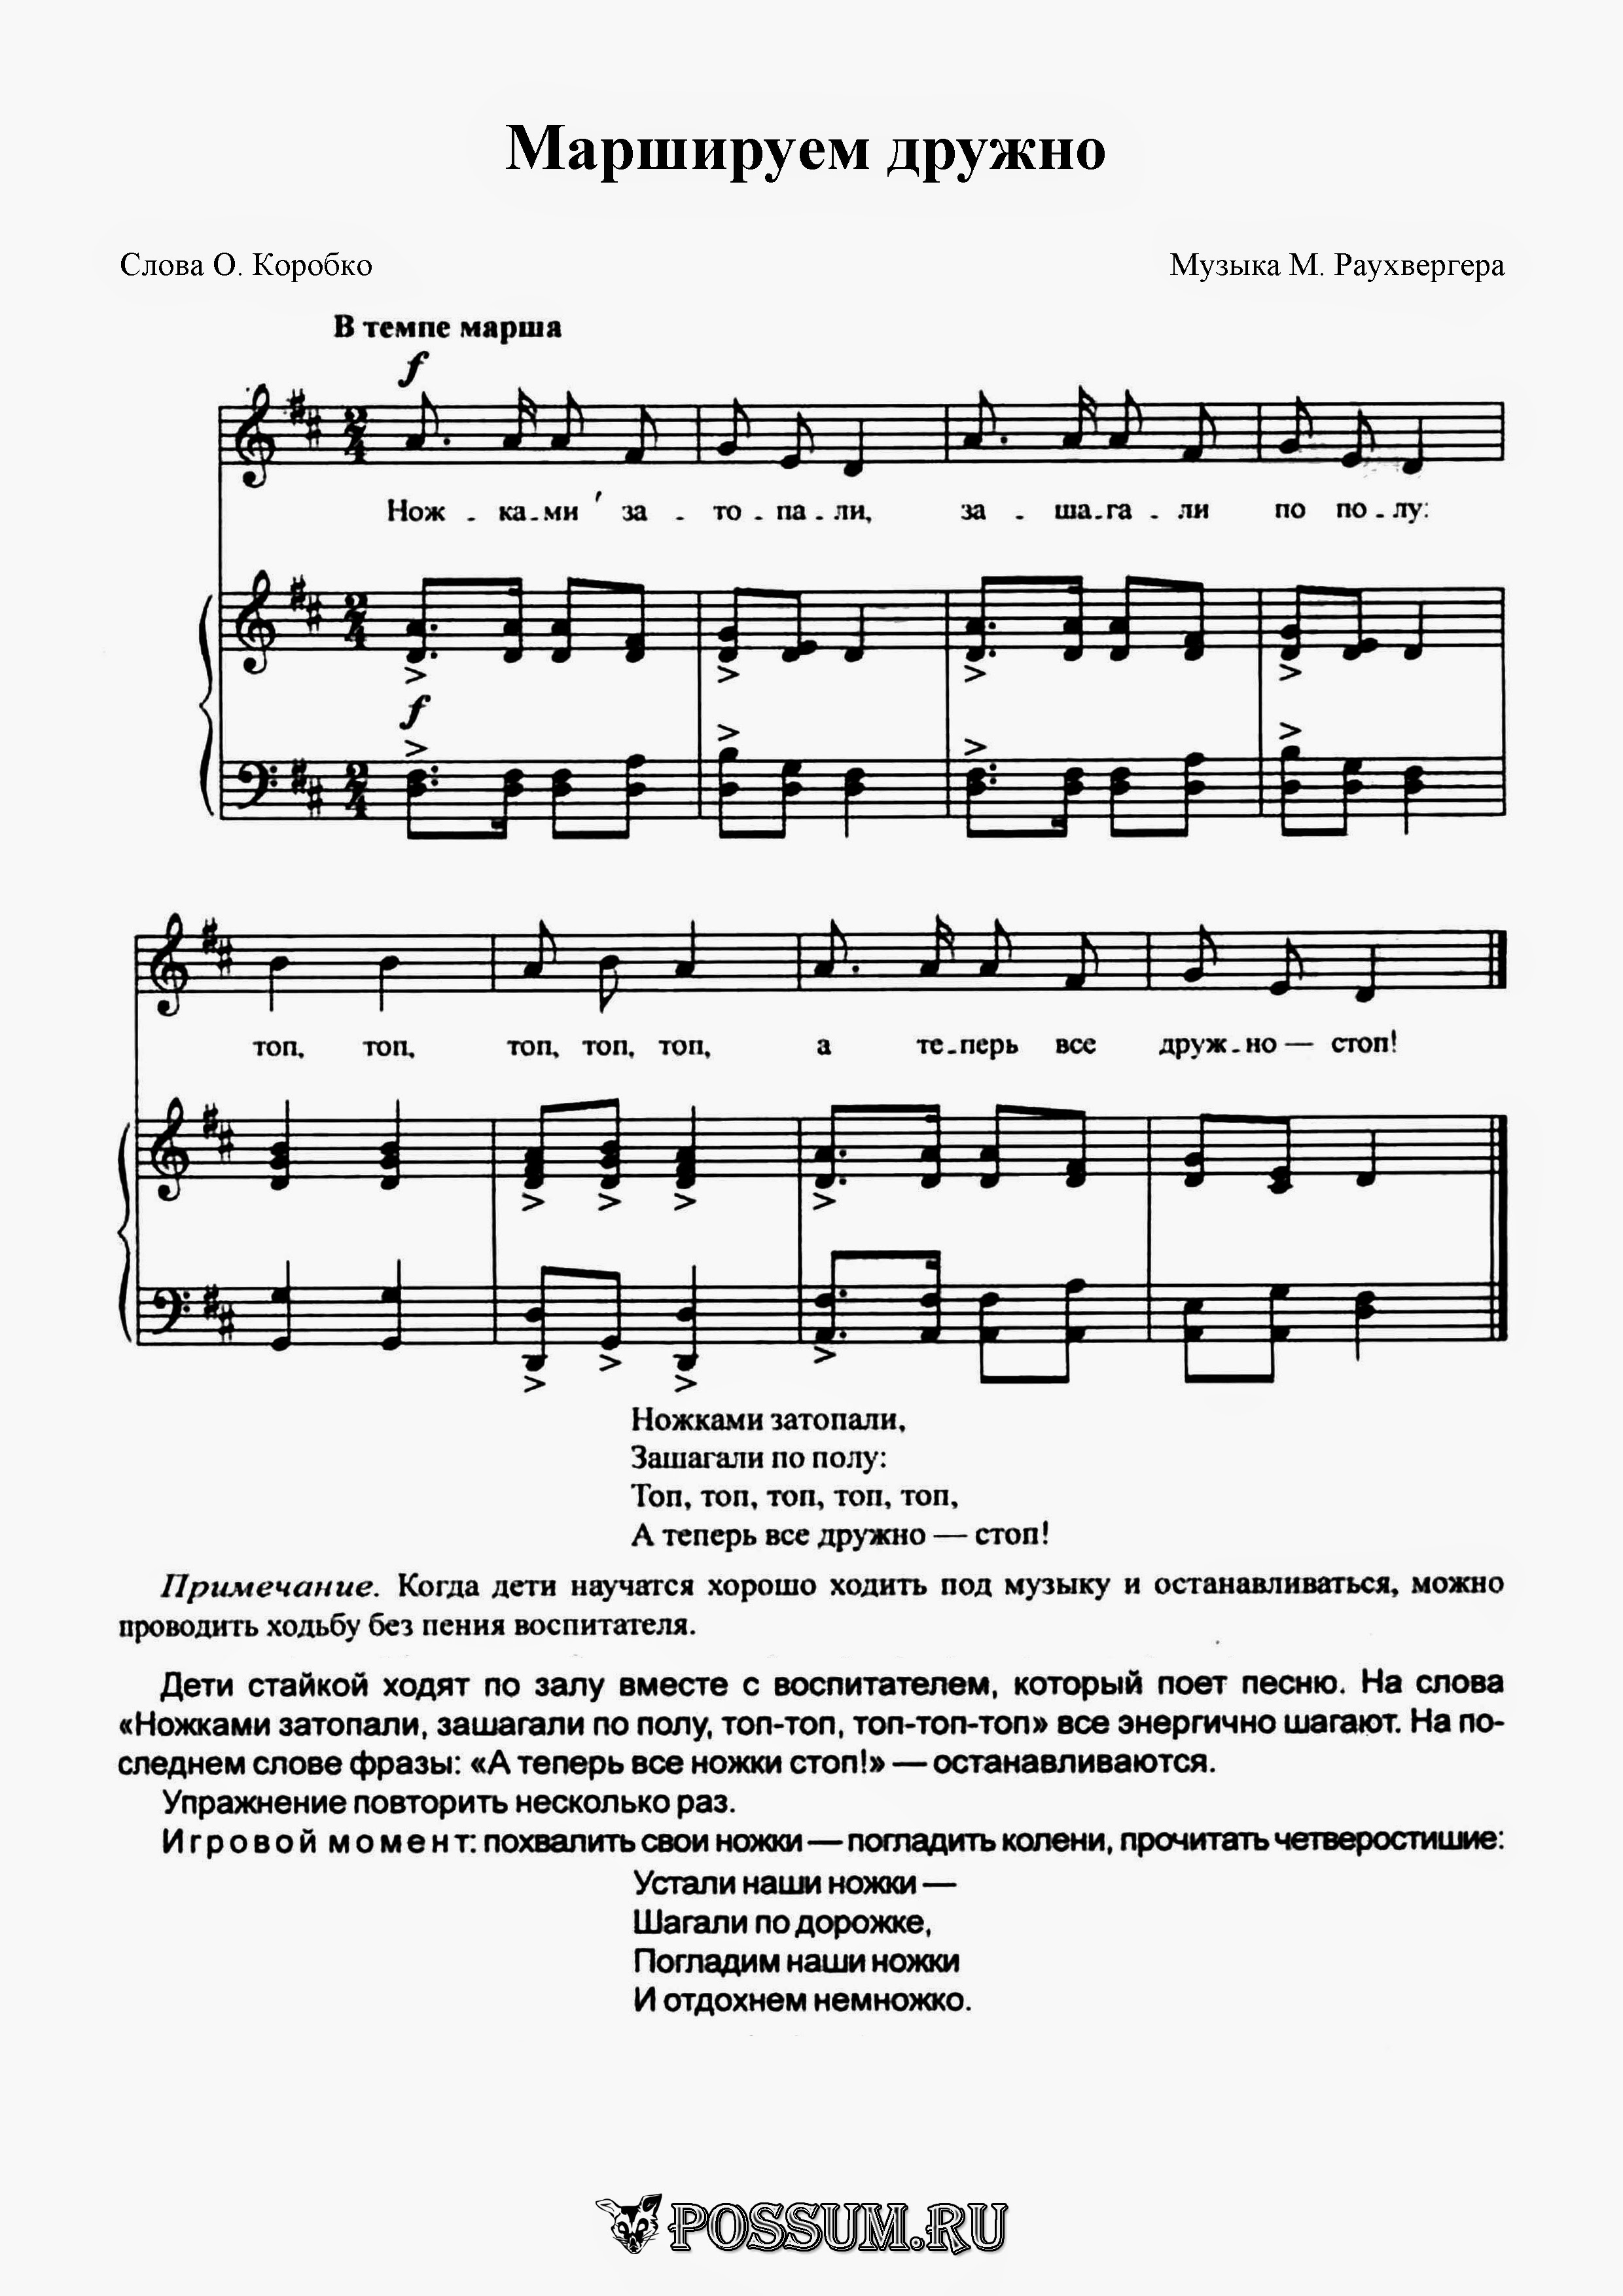 Русские народные мелодии минус скачать бесплатно